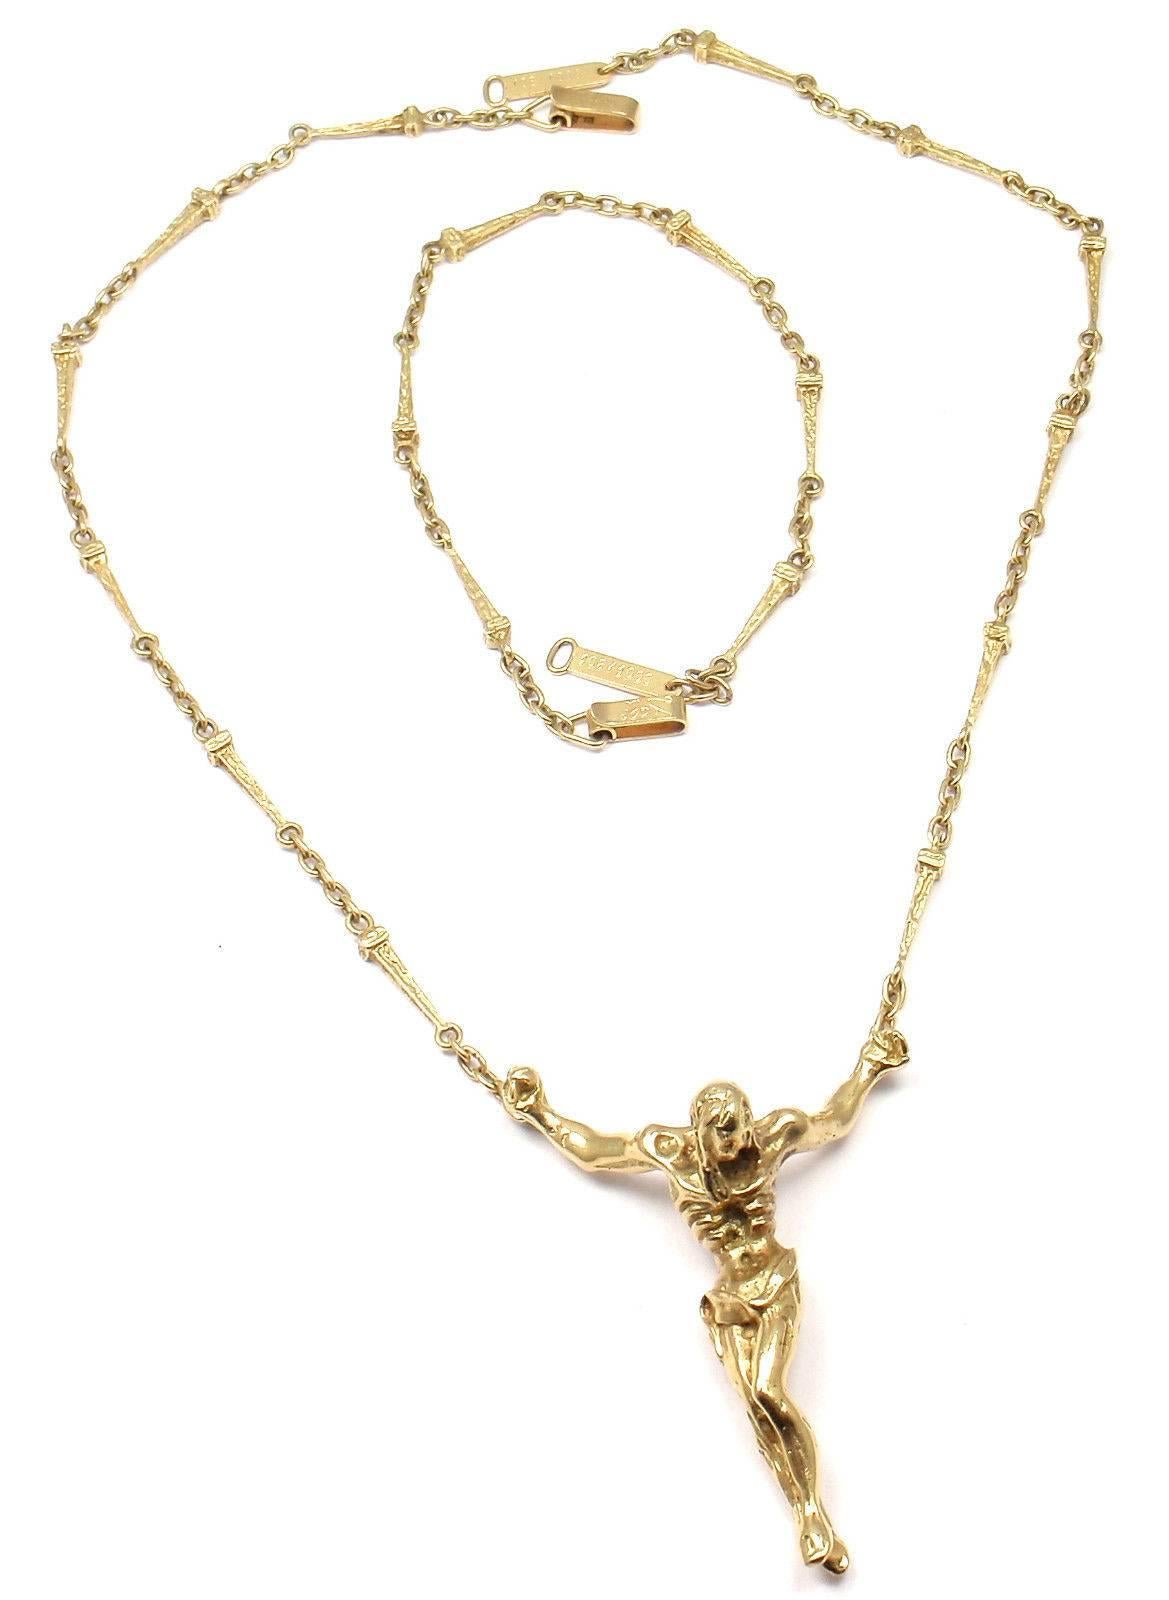 Édition limitée de l'ensemble bracelet-collier Salvador Dali Christ Saint Jean sur la Croix en or jaune 18k. 
Il s'agit d'une pièce numérotée en édition limitée des années 1970:: numéro 108 sur 1000 jamais fabriqués. 

Ce collier est livré avec une